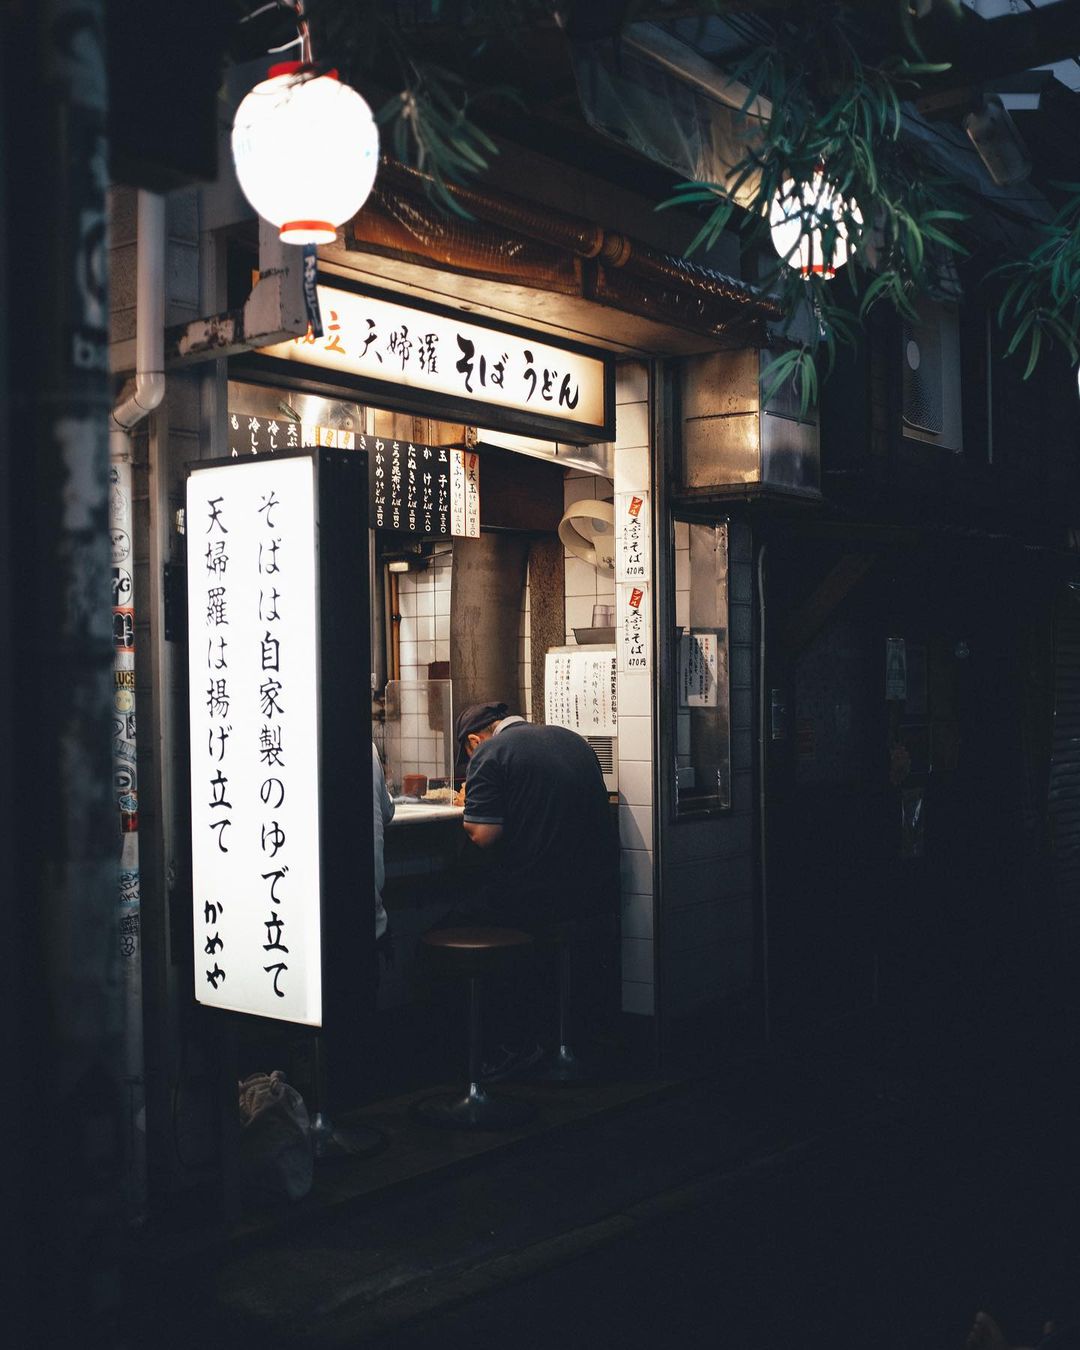 Атмосферные фотографии из Японии Токио, талантливый, исследовать, в Instagram, делится, фотограф, работами, Своими, пейзажи, городские, замечательные, запечатлеть, чтобы, улицы, любит, фотографсамоучка, фотографии, уличной, пейзажной, основном